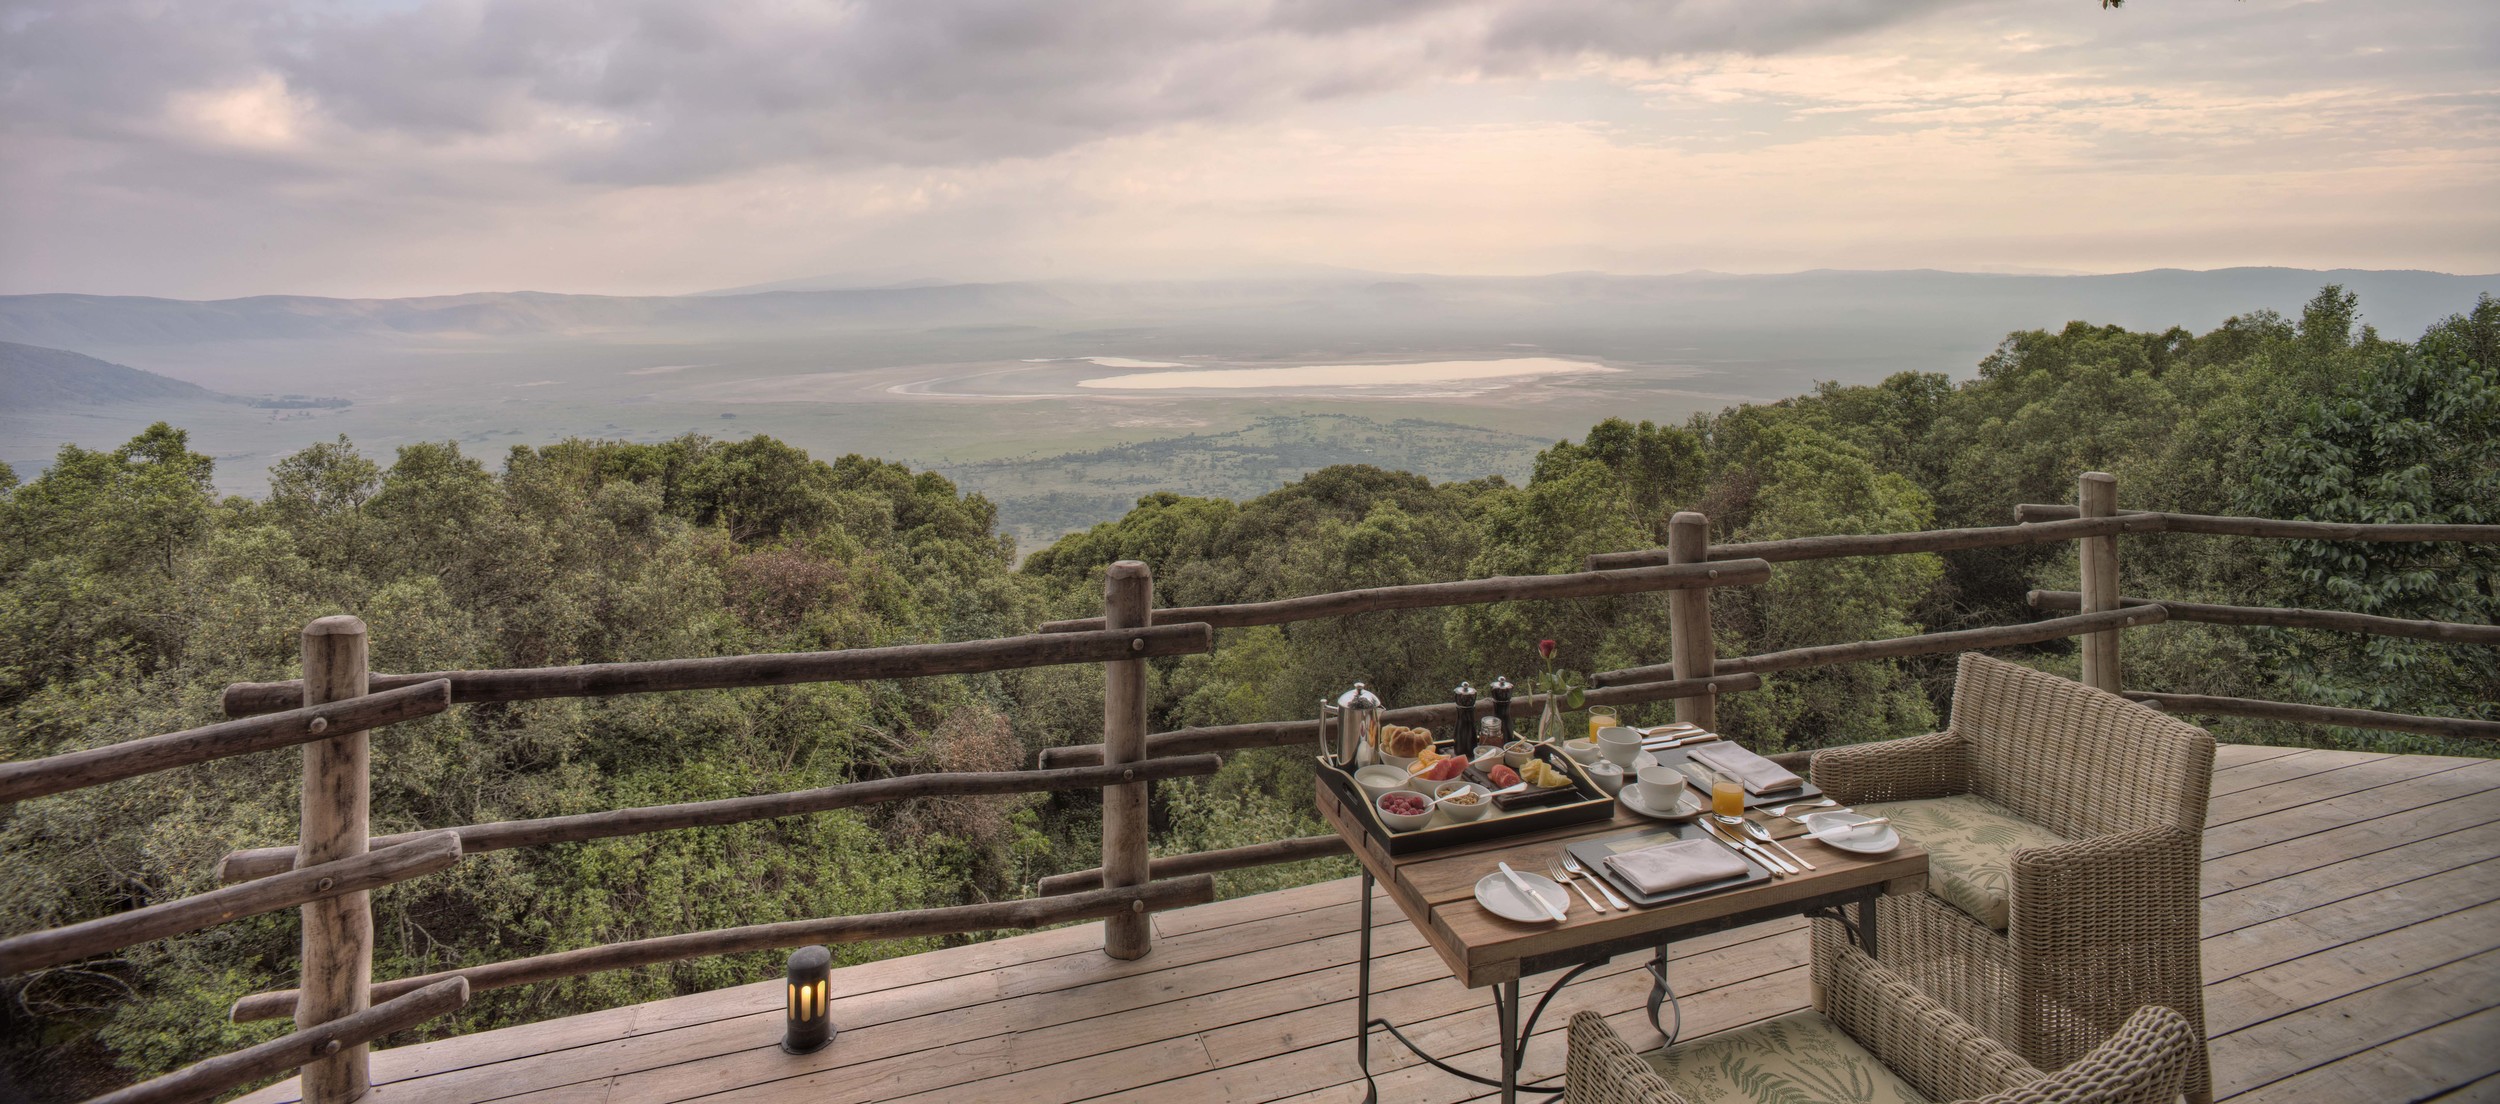 Ngorongoro_crater_lodge18.jpg